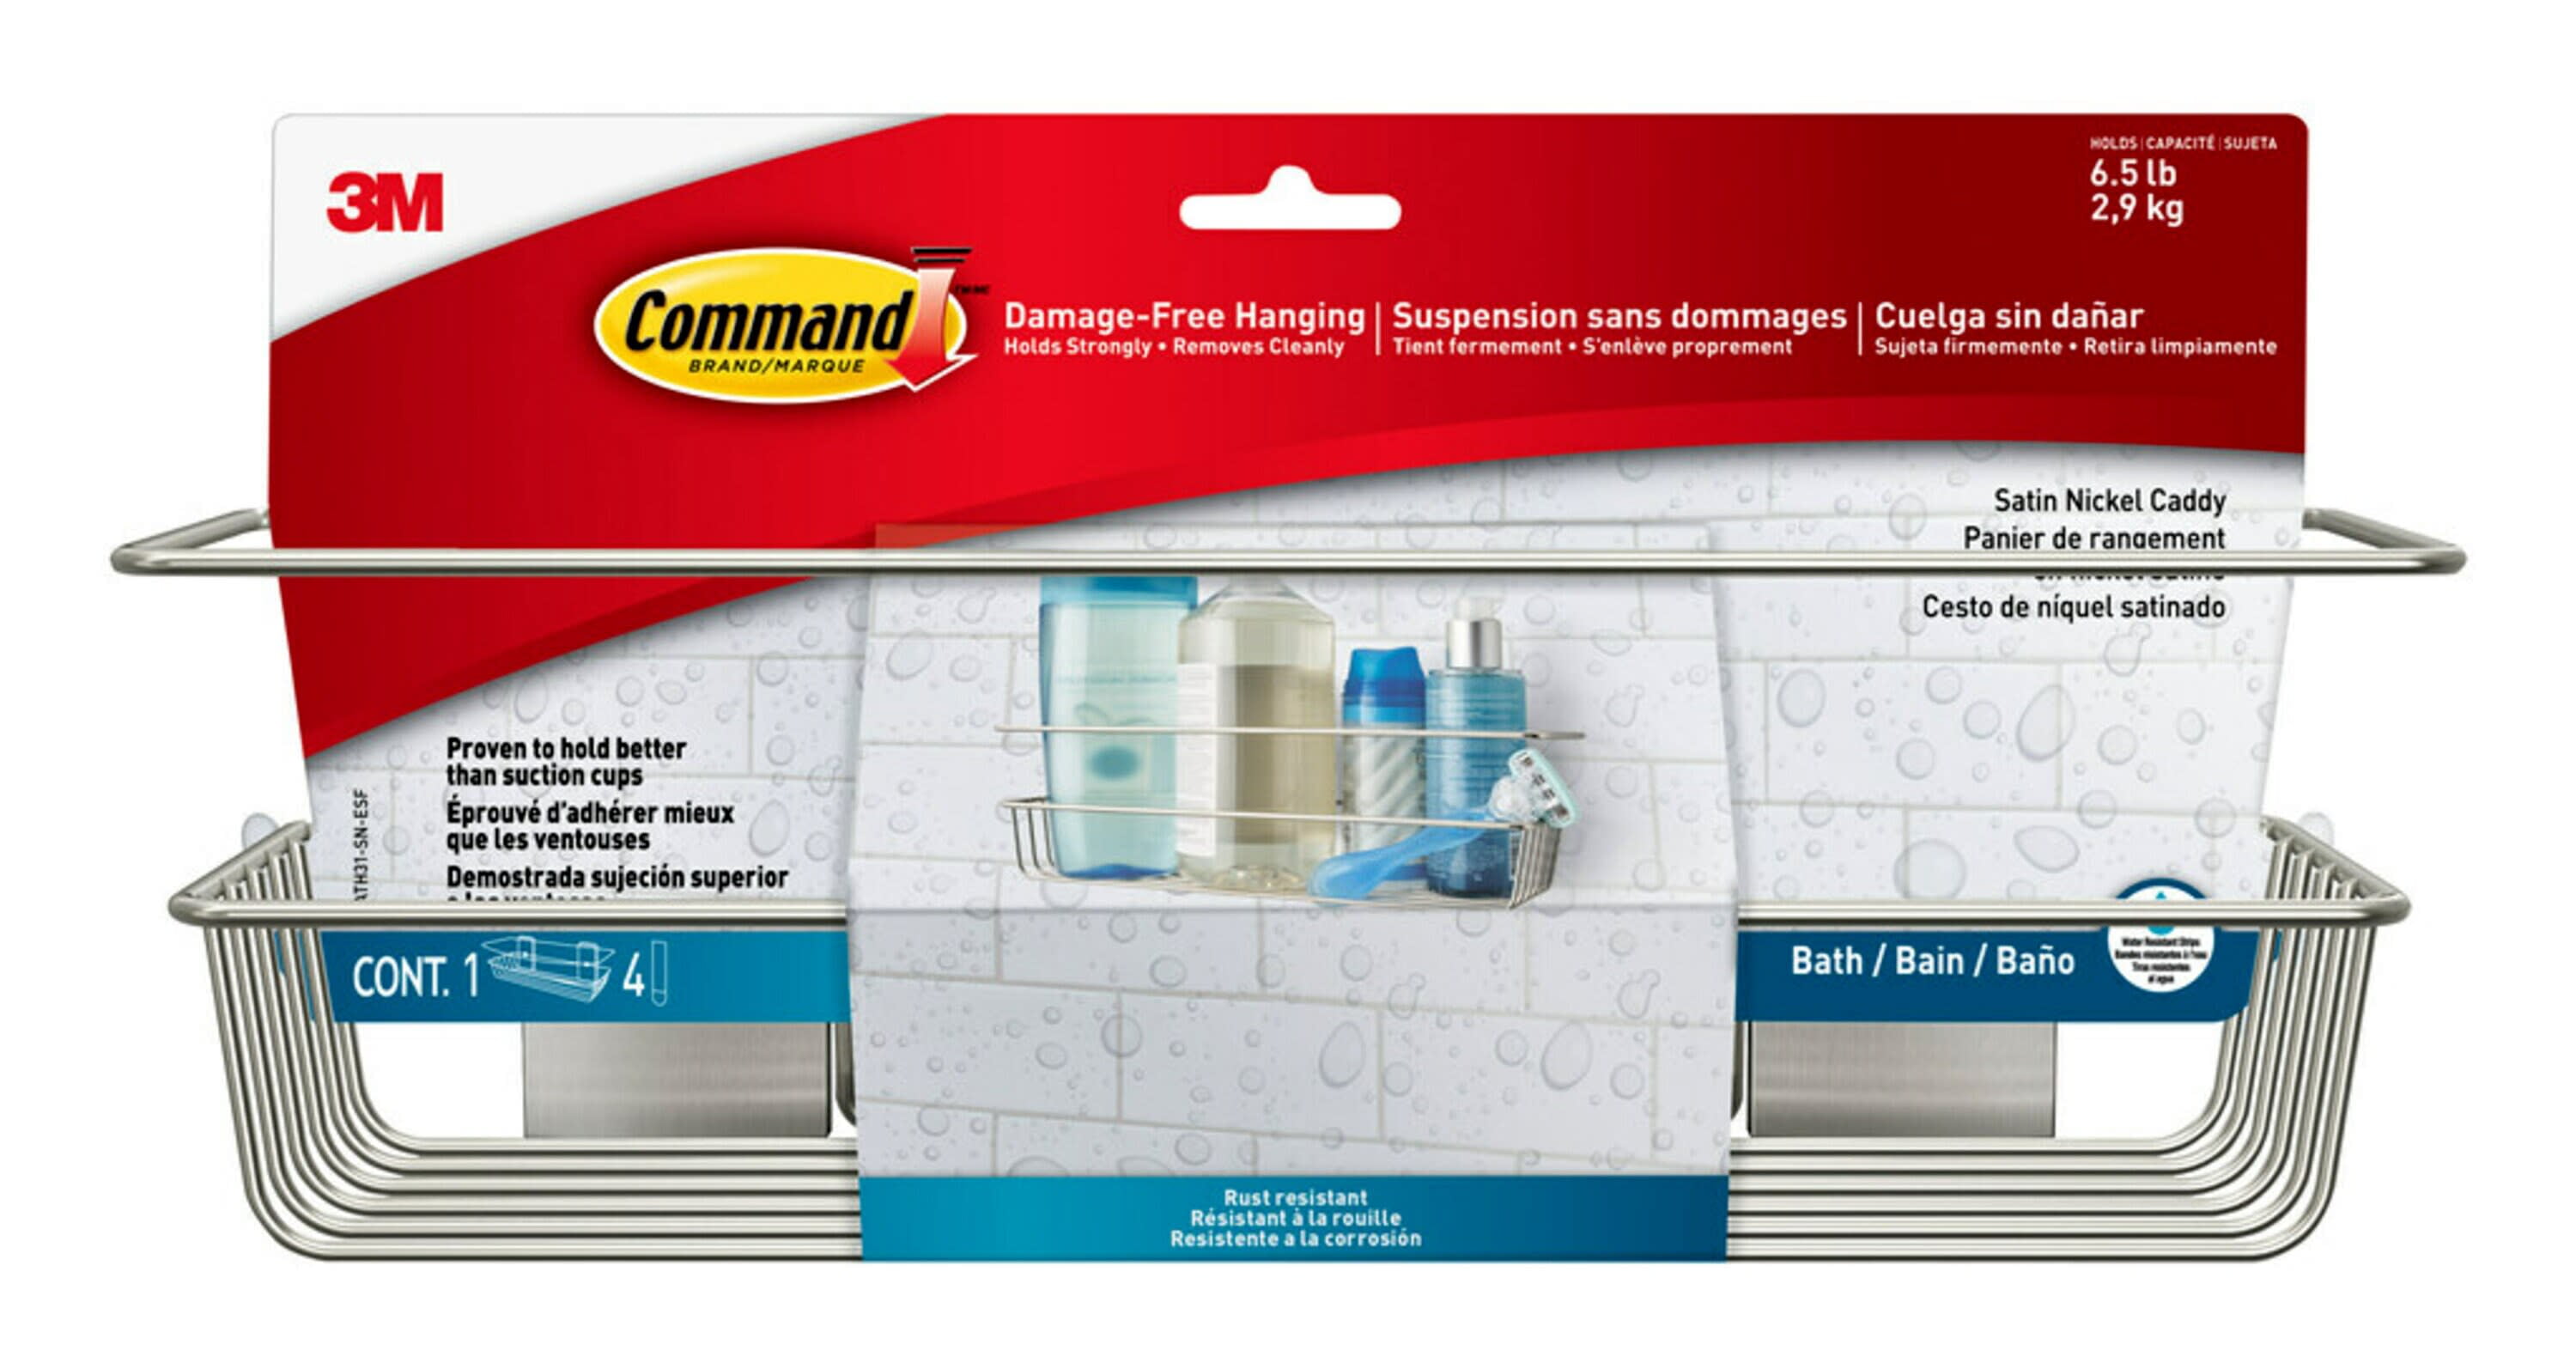 Command Bath Shower Caddy, Satin Nickel, 1 Caddy, 4 Water Resistant Strips, Bathroom Organization